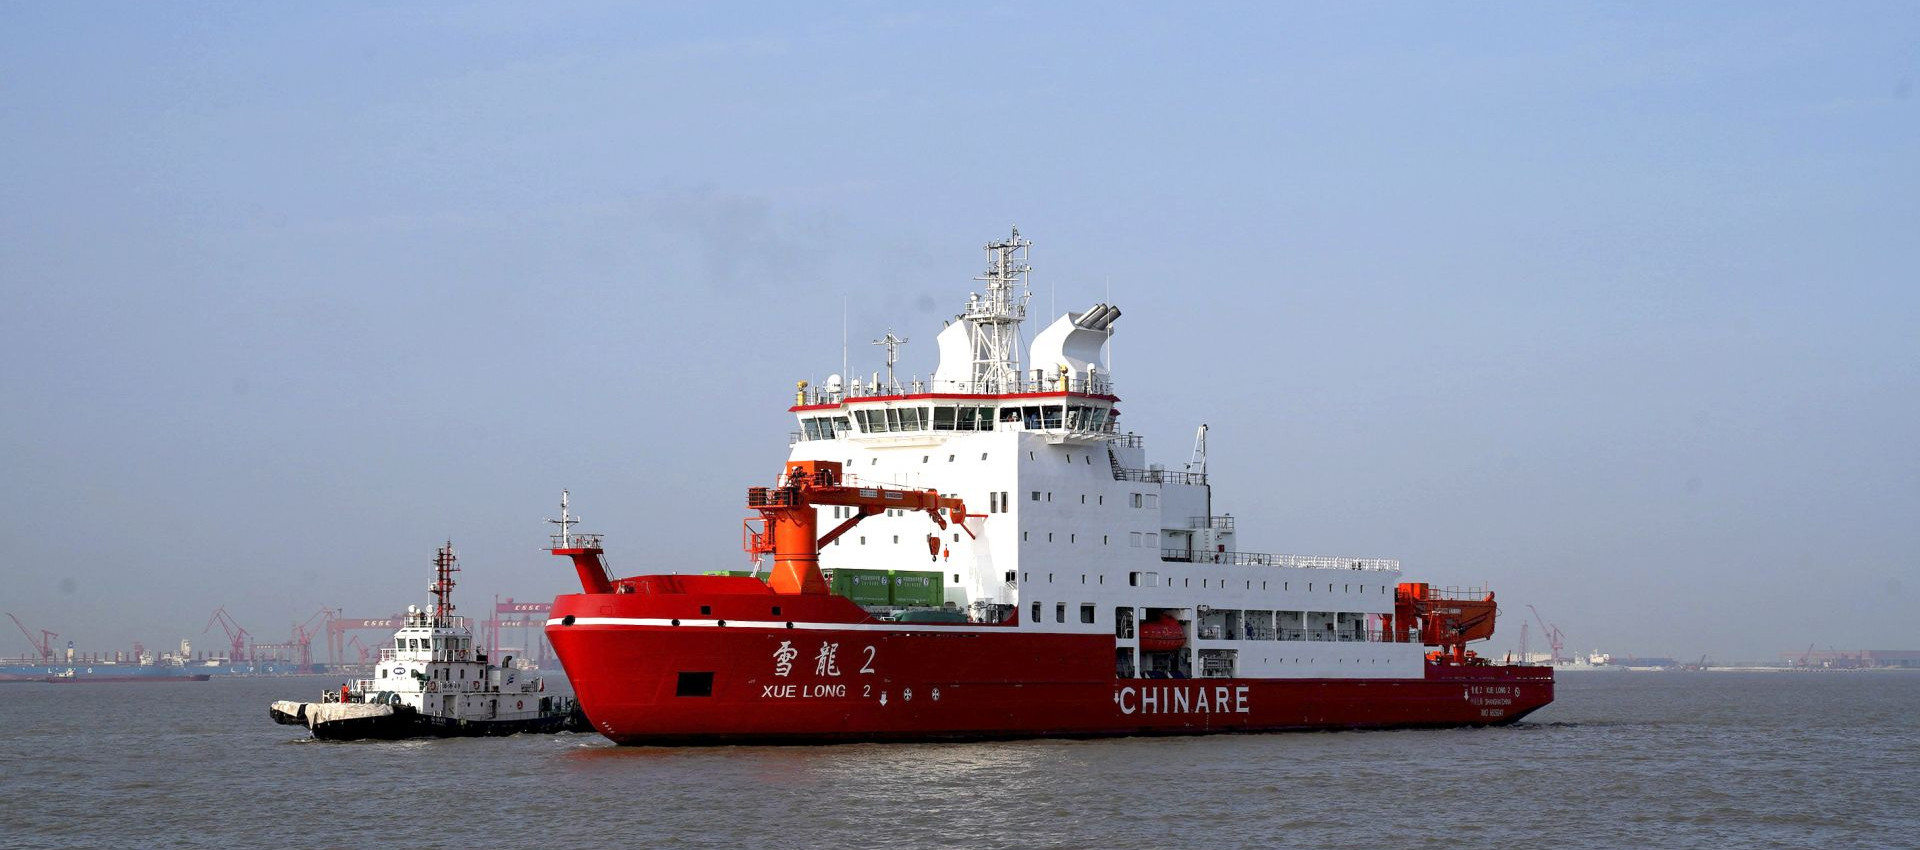 последний случай компании о Провод заварки Longteng был использован на корабле экспедиции Xuelong приполюсном